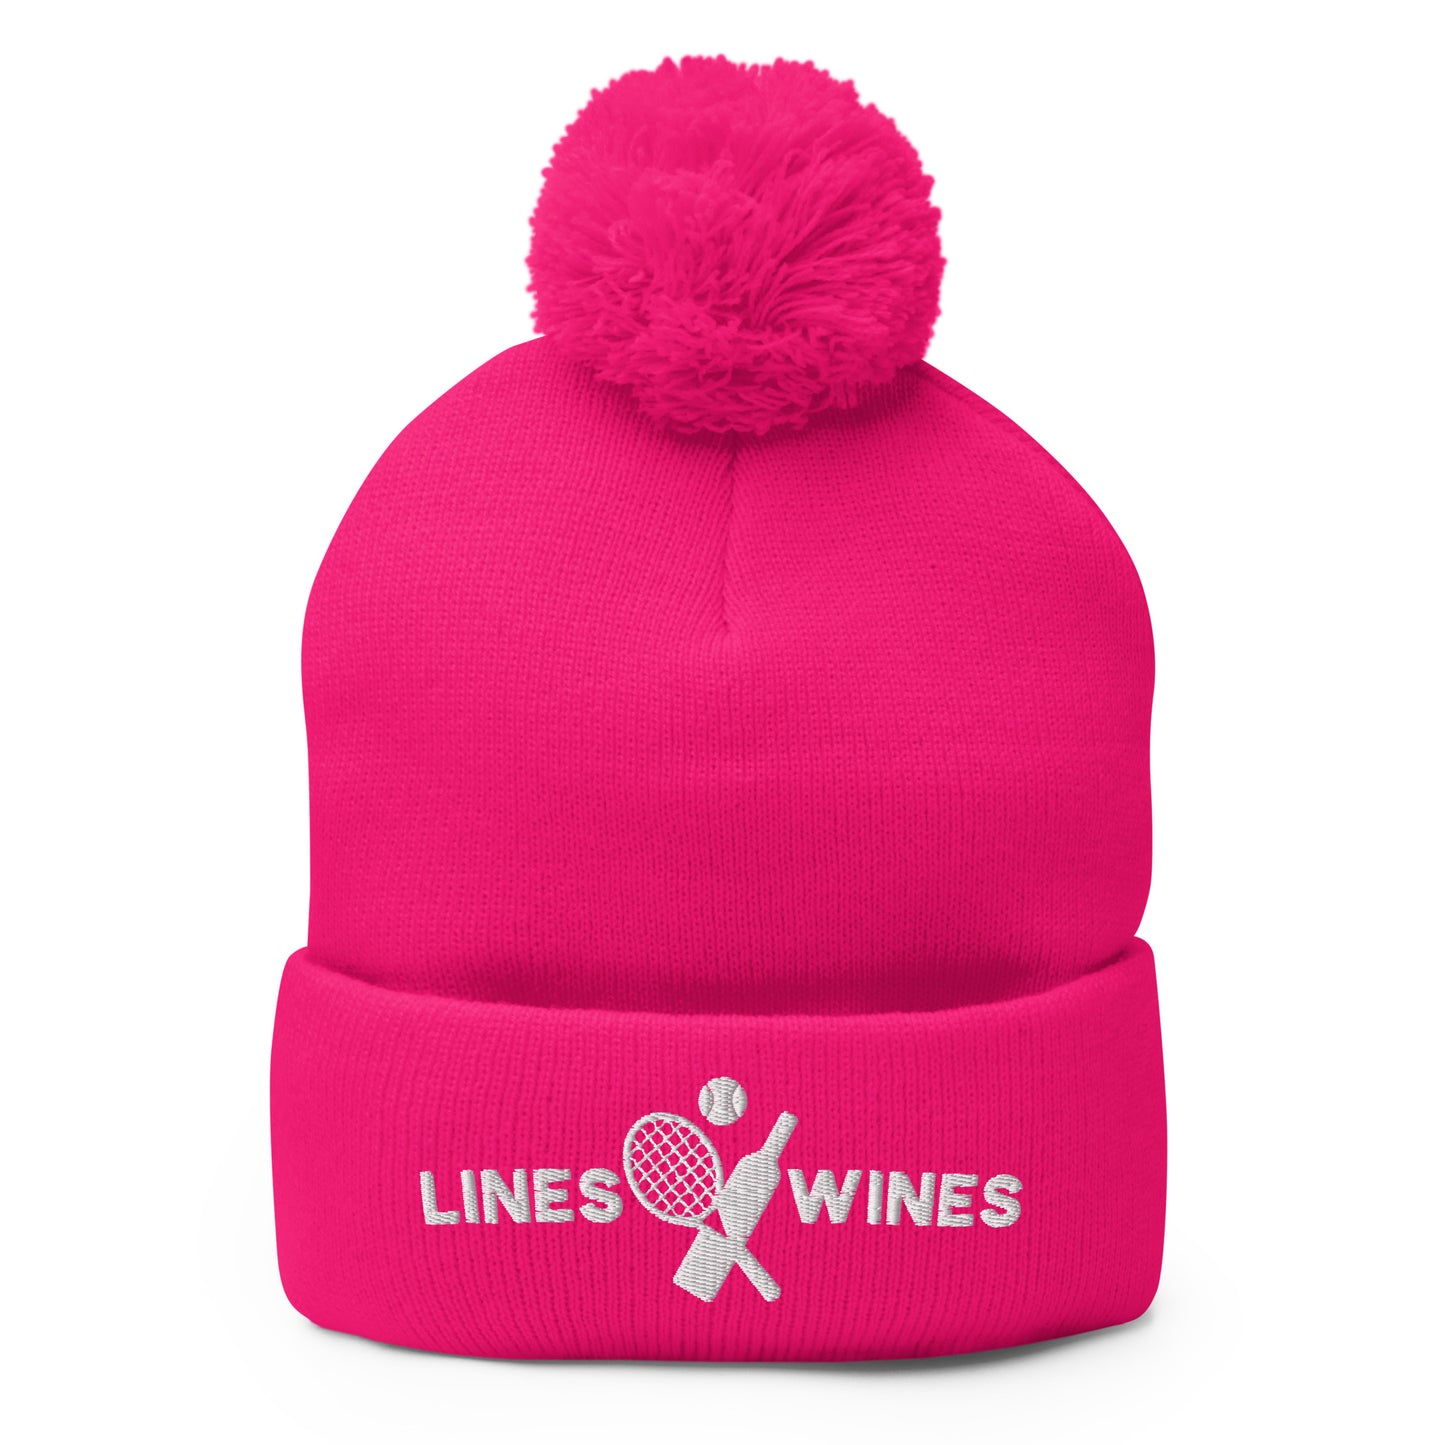 Lines & Wines pink unisex pom-pom beanie